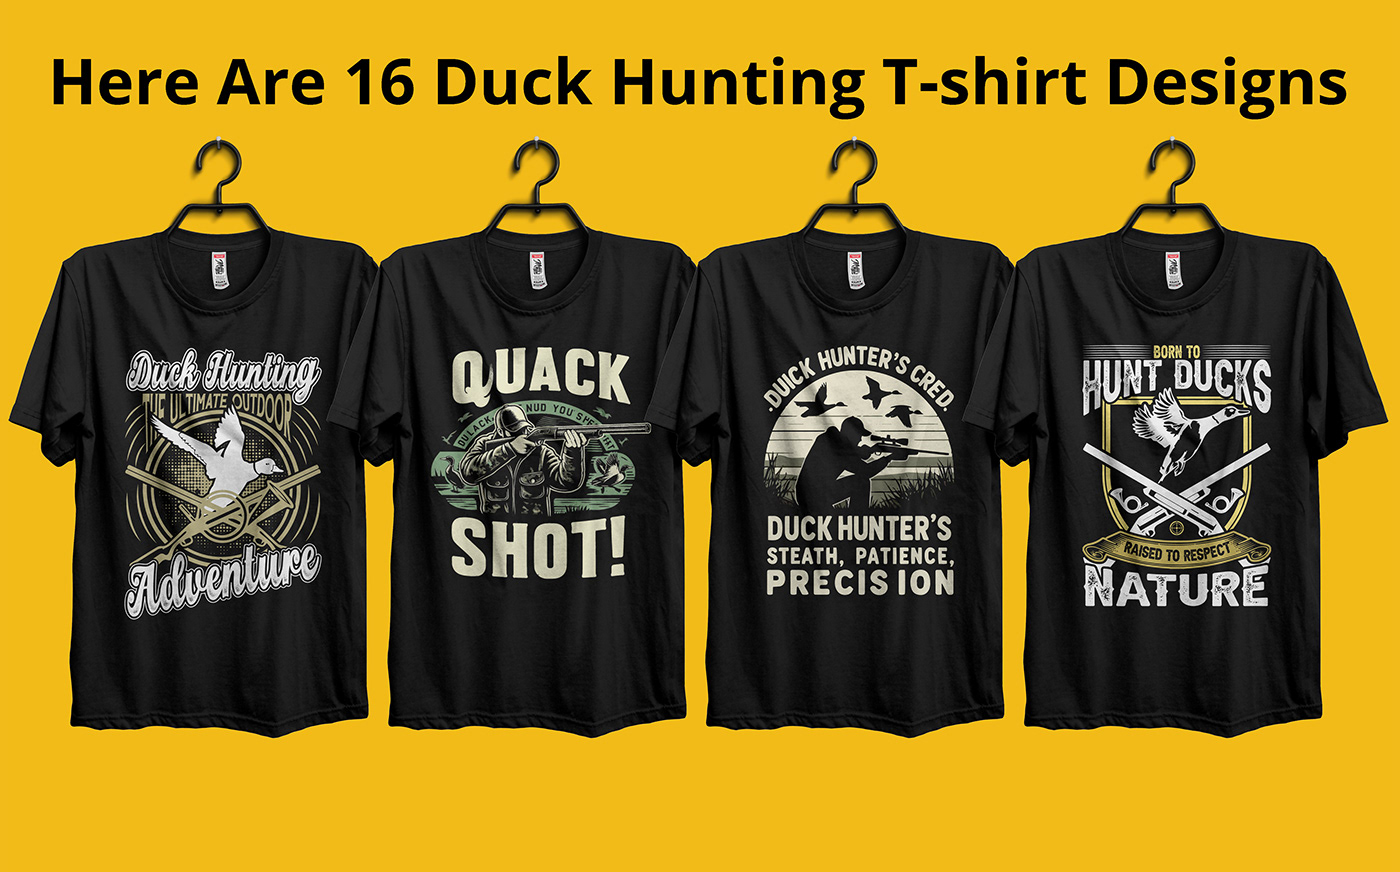 duck hunting t-shirt Duck Hunting Hunting T-shirt Design Hunting T-shirt Hunting Hunting t shirt duck hunting shirts duck hunting t-shirts Low cost T-shirt Design